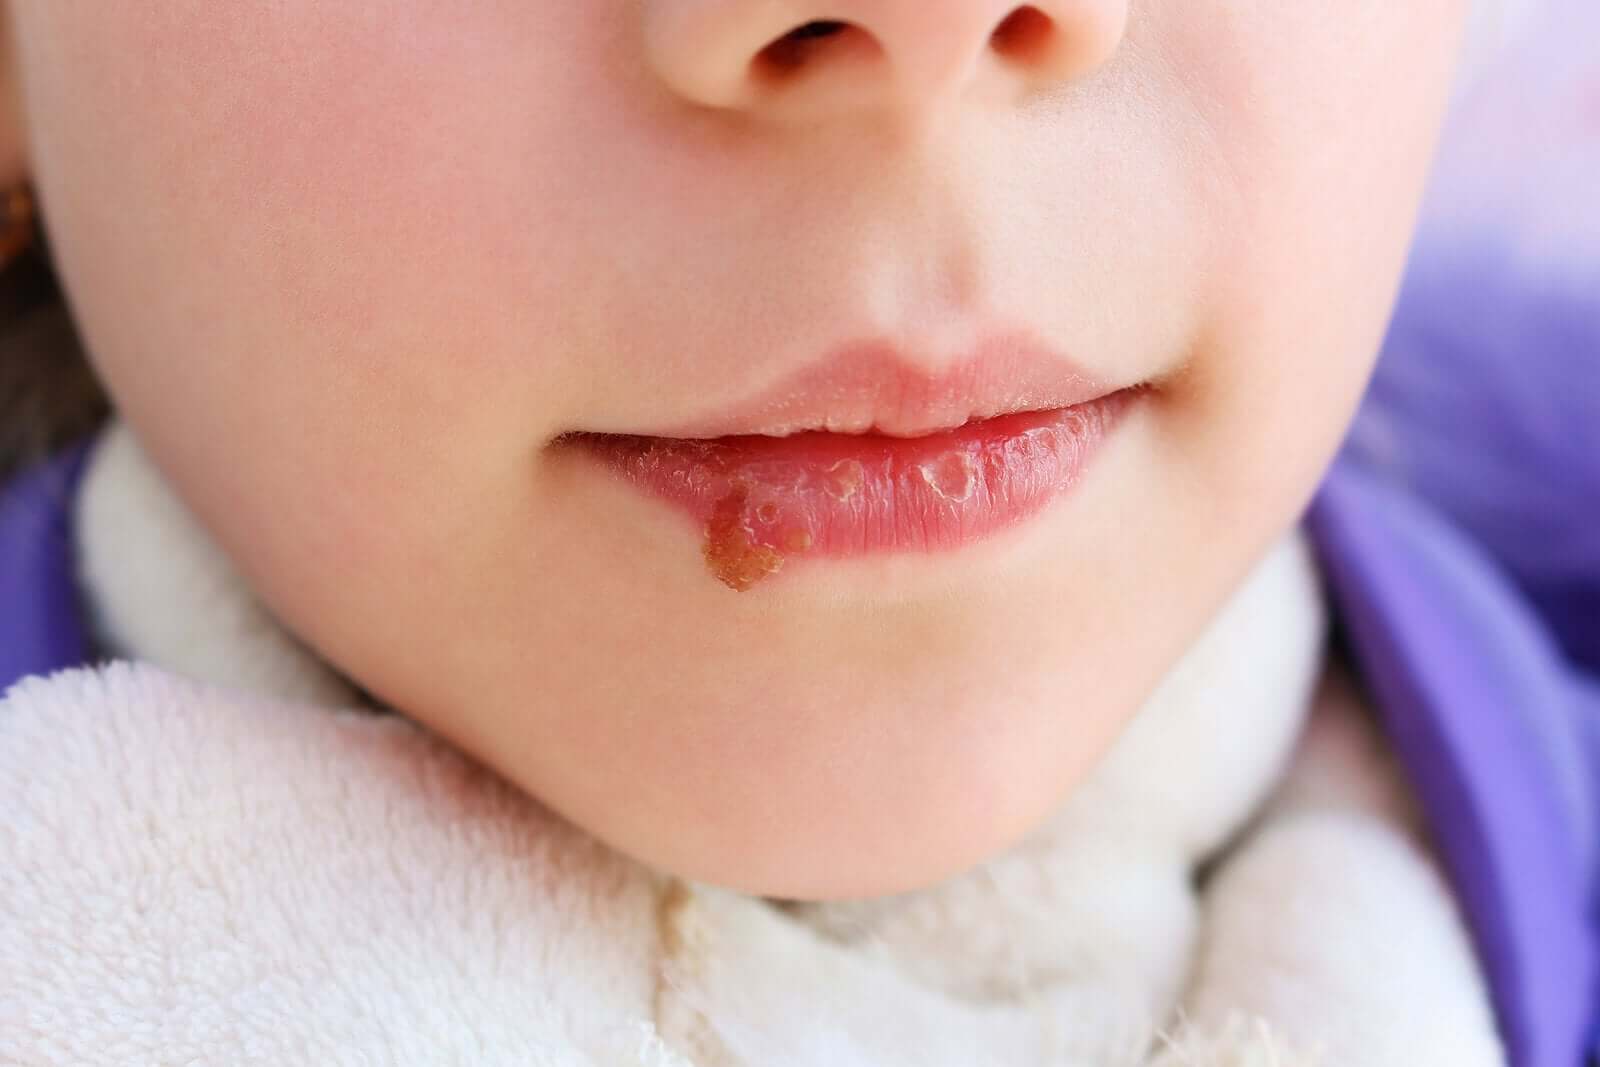 Dziecko z opryszczką na ustach.